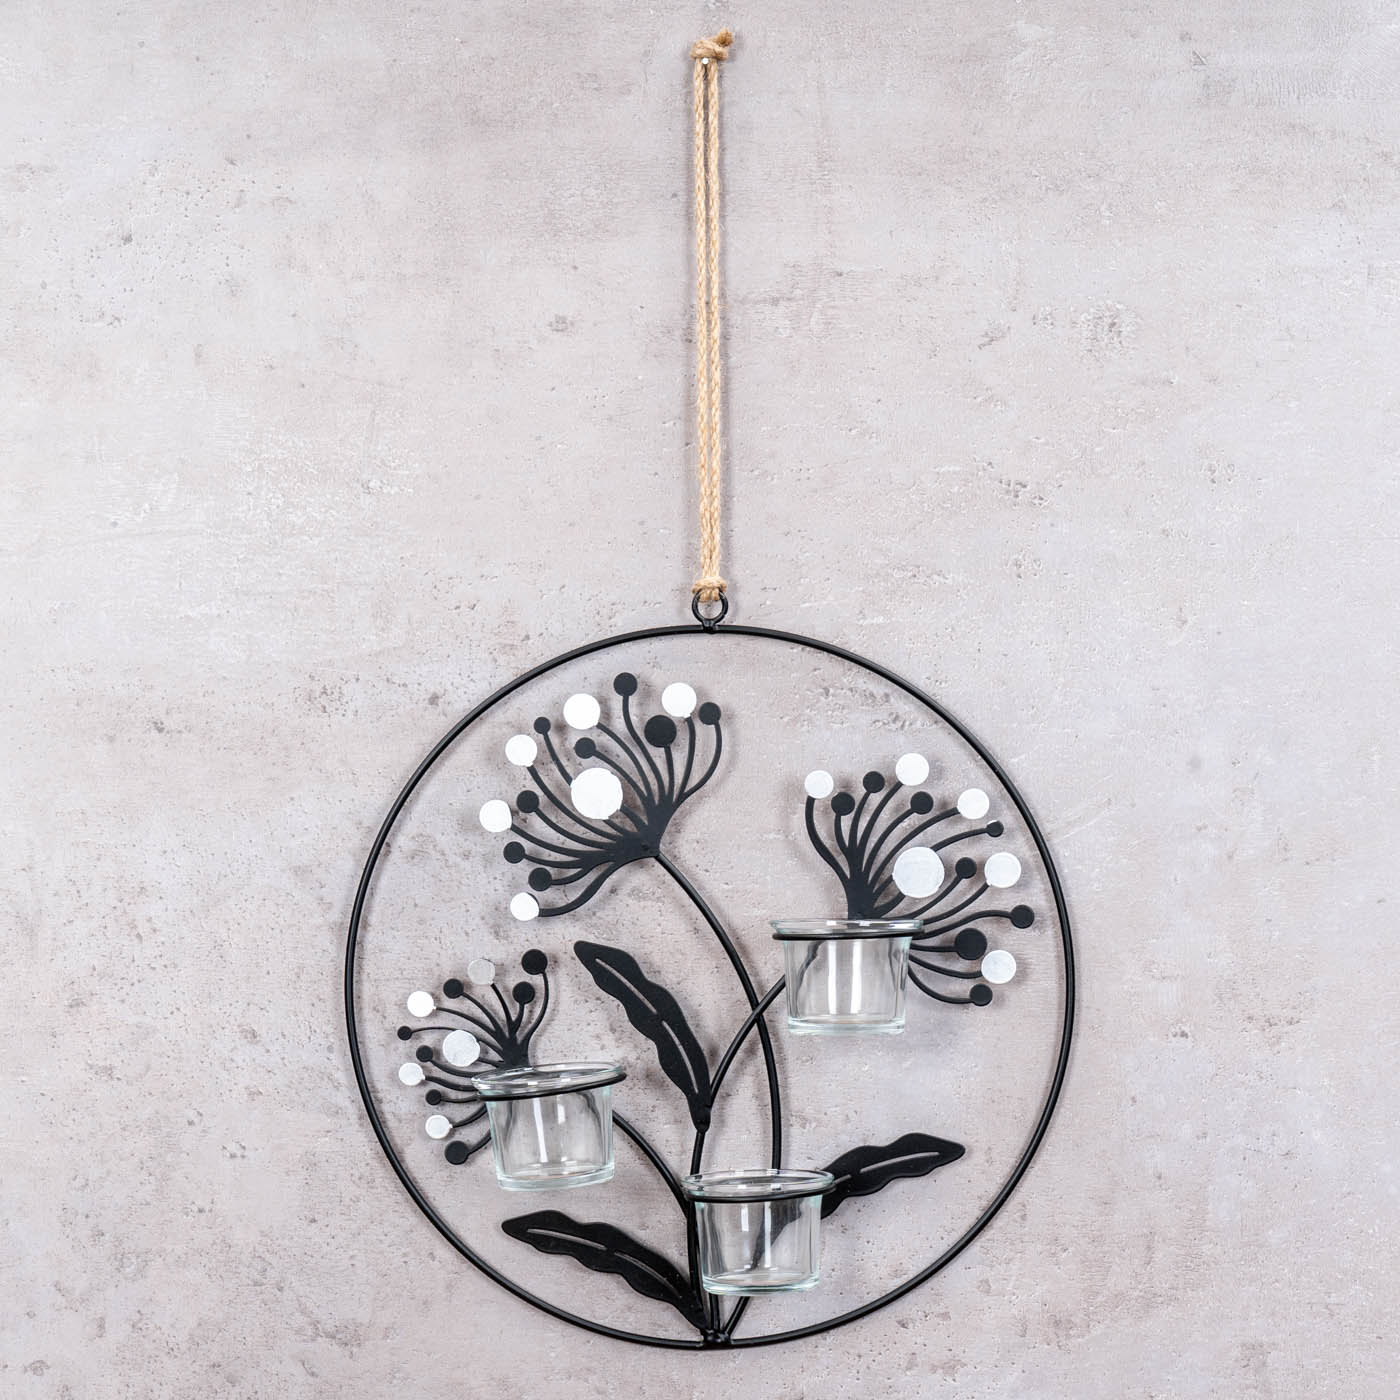 Wand Teelichthalter 30cm Rund Metall Schwarz Silber Blumen Ring Kerzenhalter